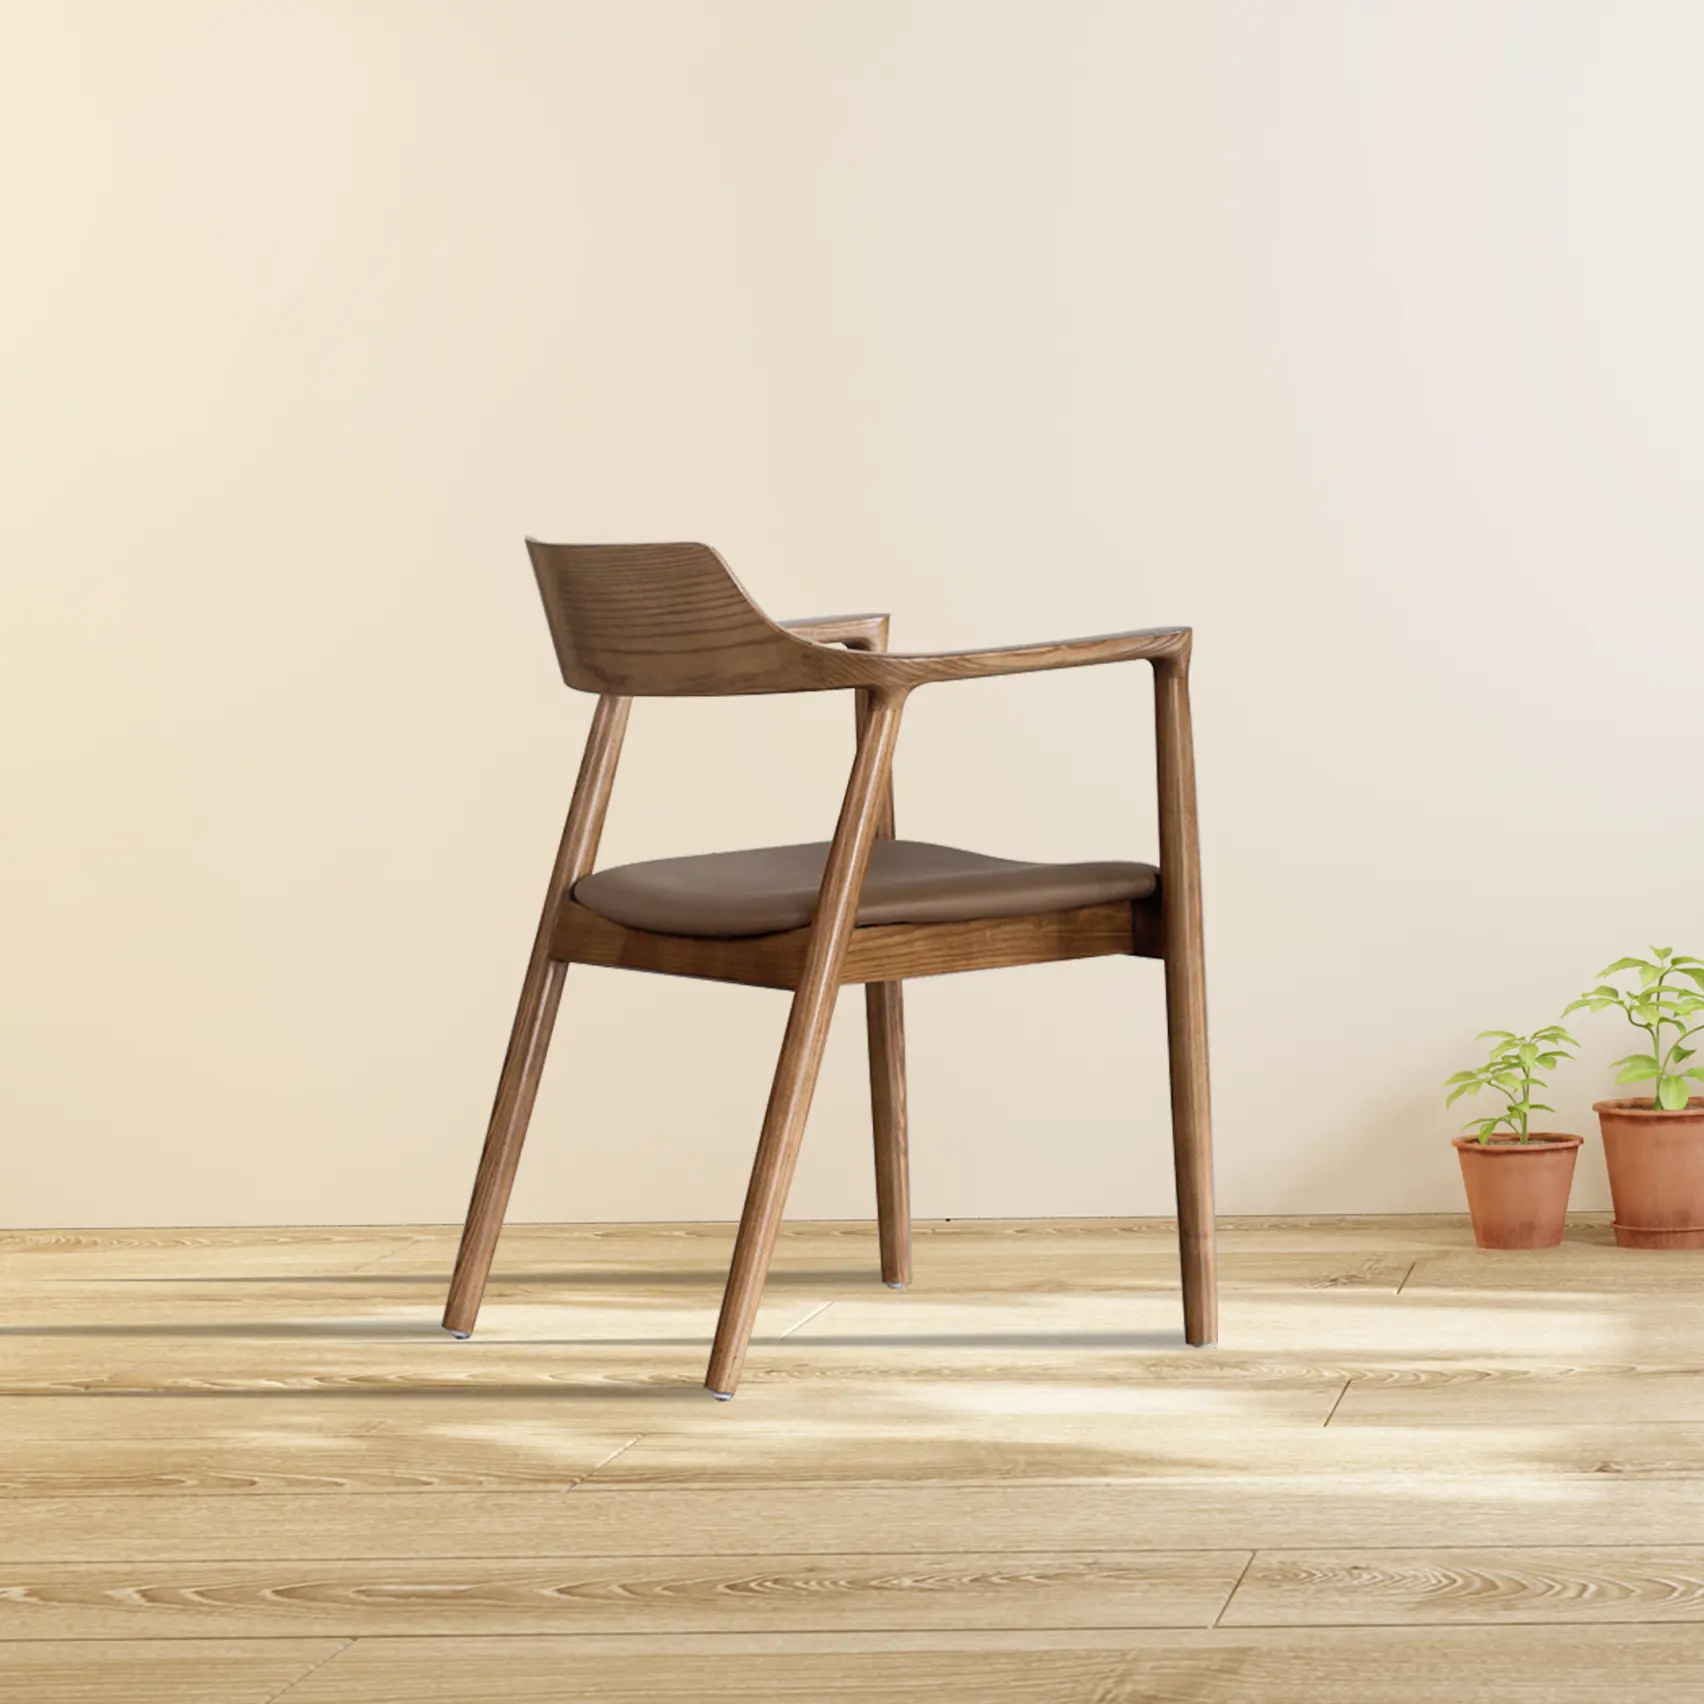 كرسي أثاث حديث بسيط من الخشب الصلب بتصميم عالي الجودة بسعر خاص، كرسي للاسترخاء في غرفة المعيشة وغرفة النوم، كرسي فندقي